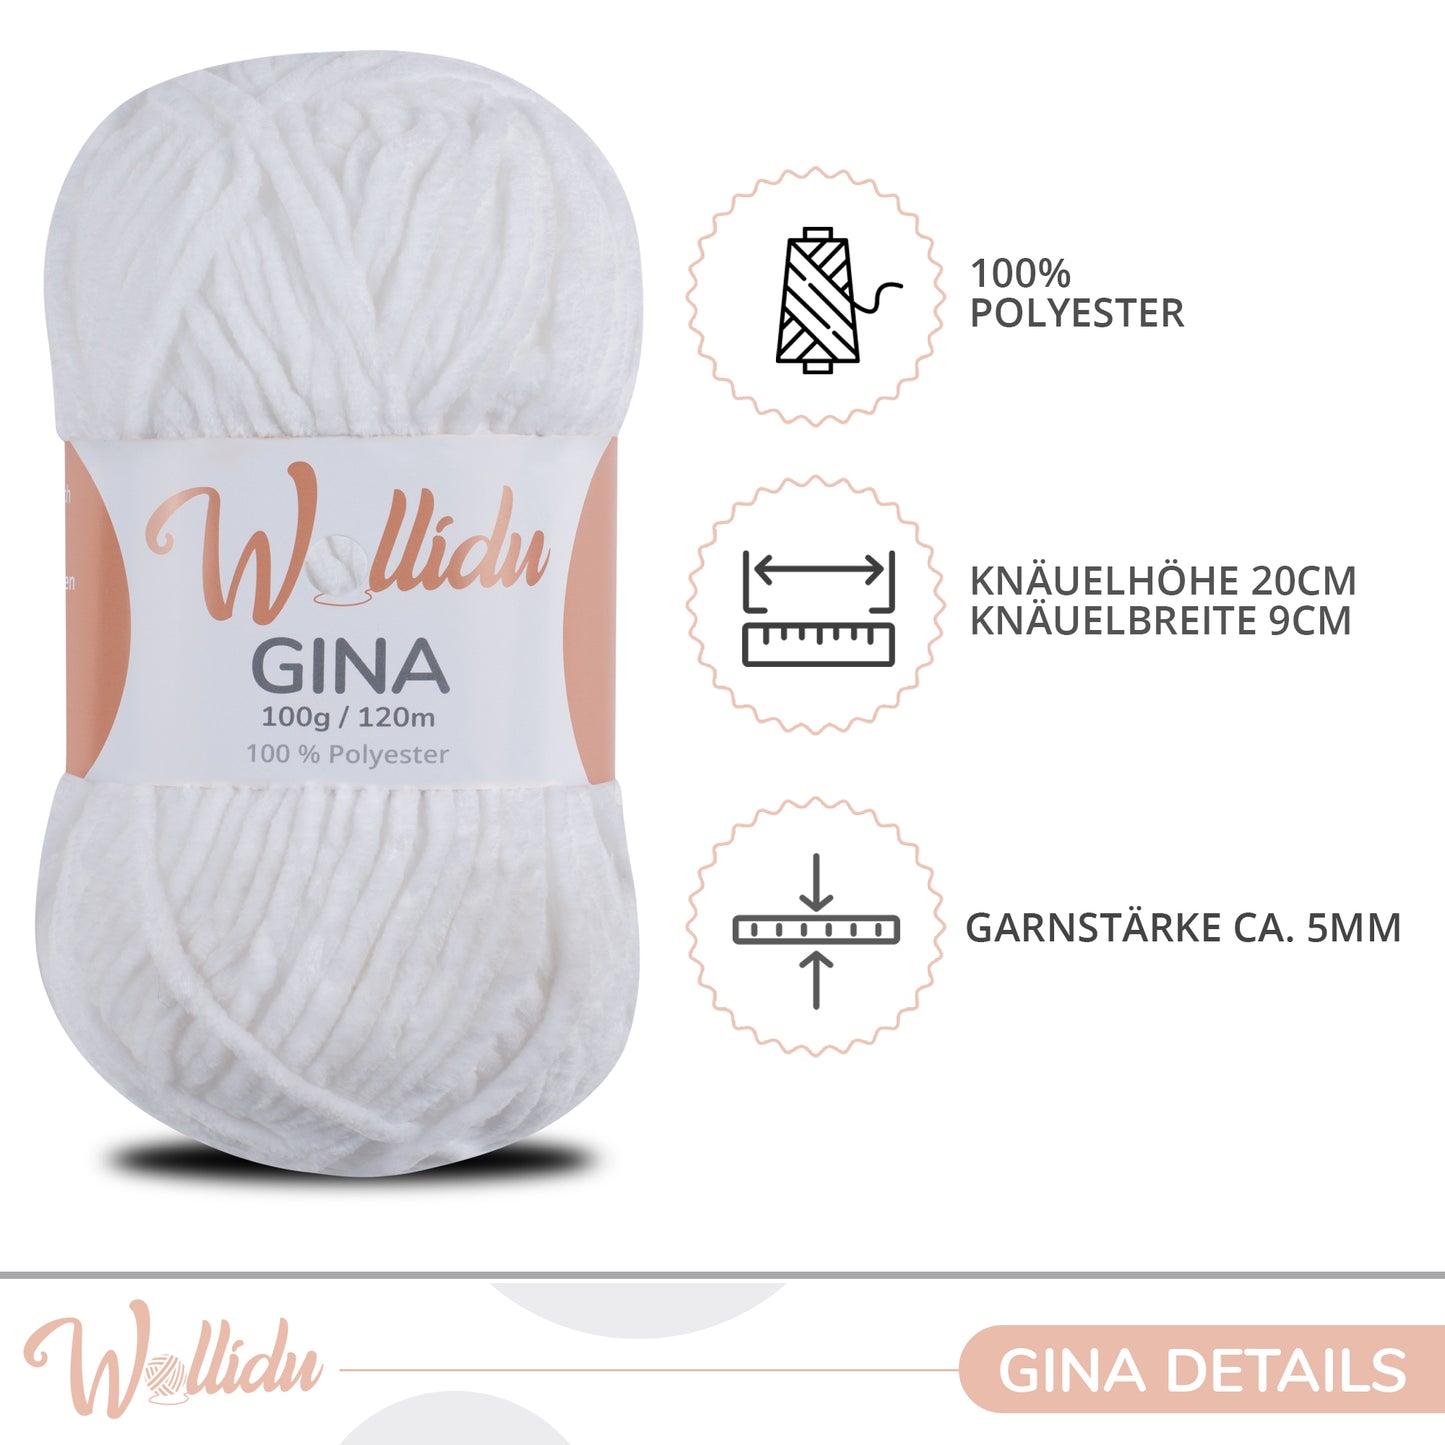 Wollidu Gina 100% Polyester 5 x 100g/120m - Weiß